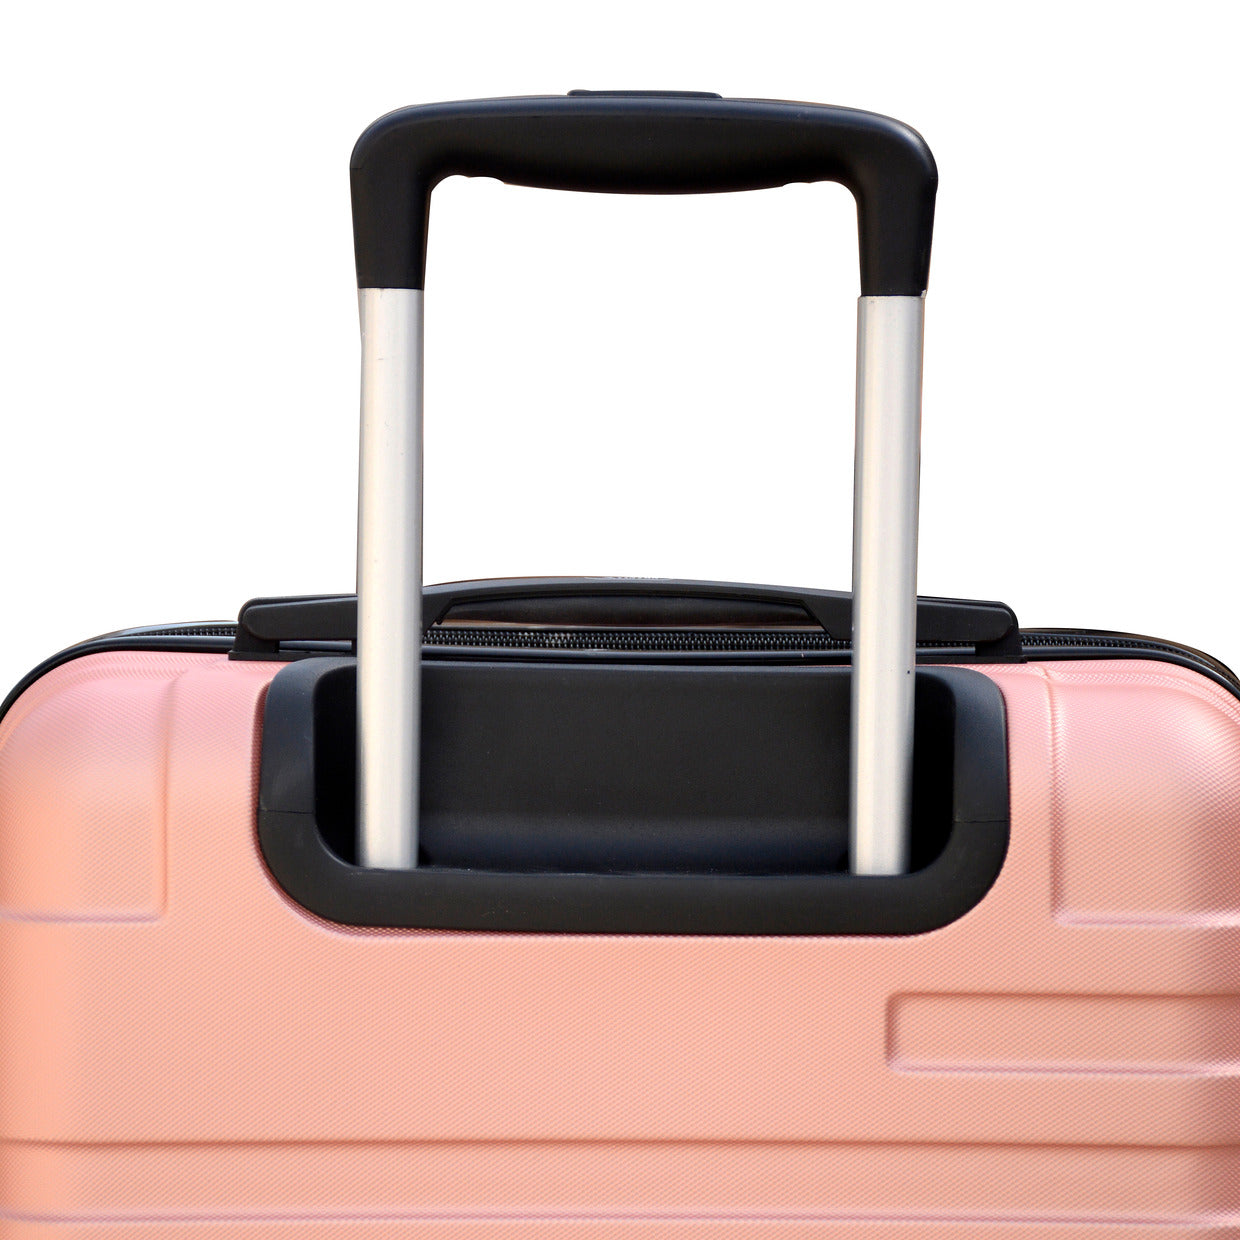 4 Wheel ABS Rose Gold Dot Luggage | Yinton Dot Rose Gold - YXLGAB4WRG